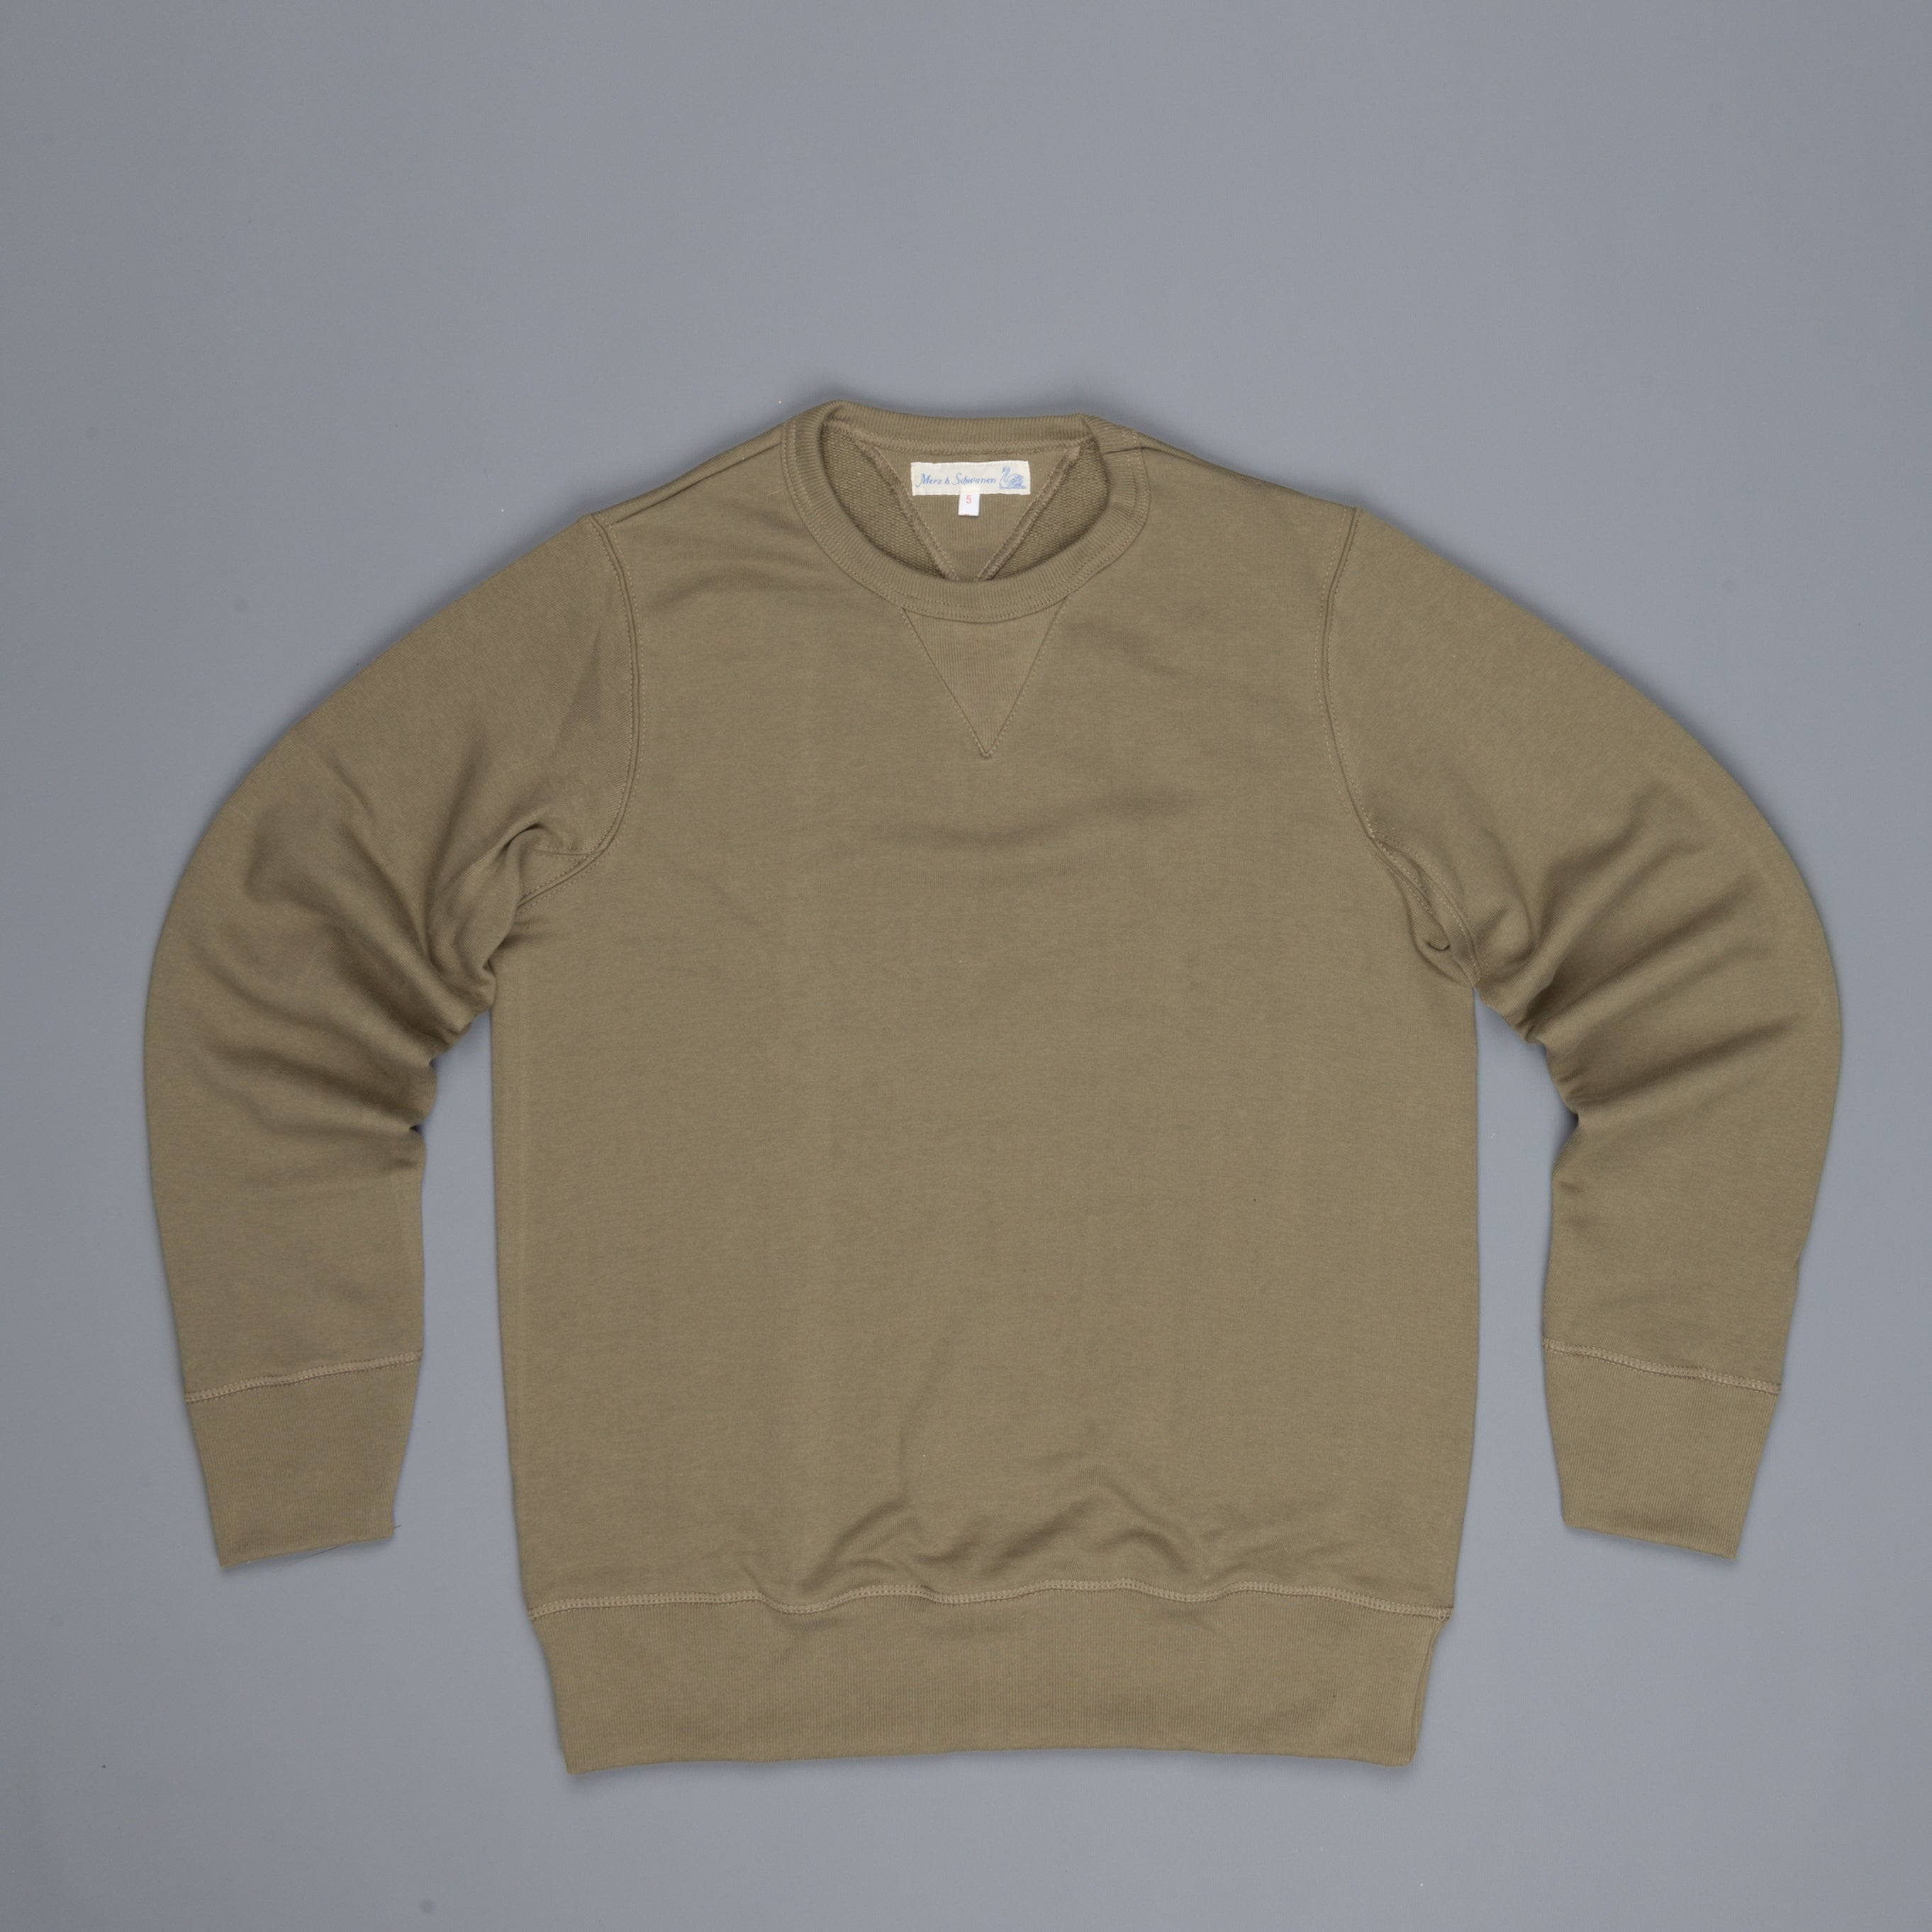 Merz B Schwanen 346 Fleece sweater army